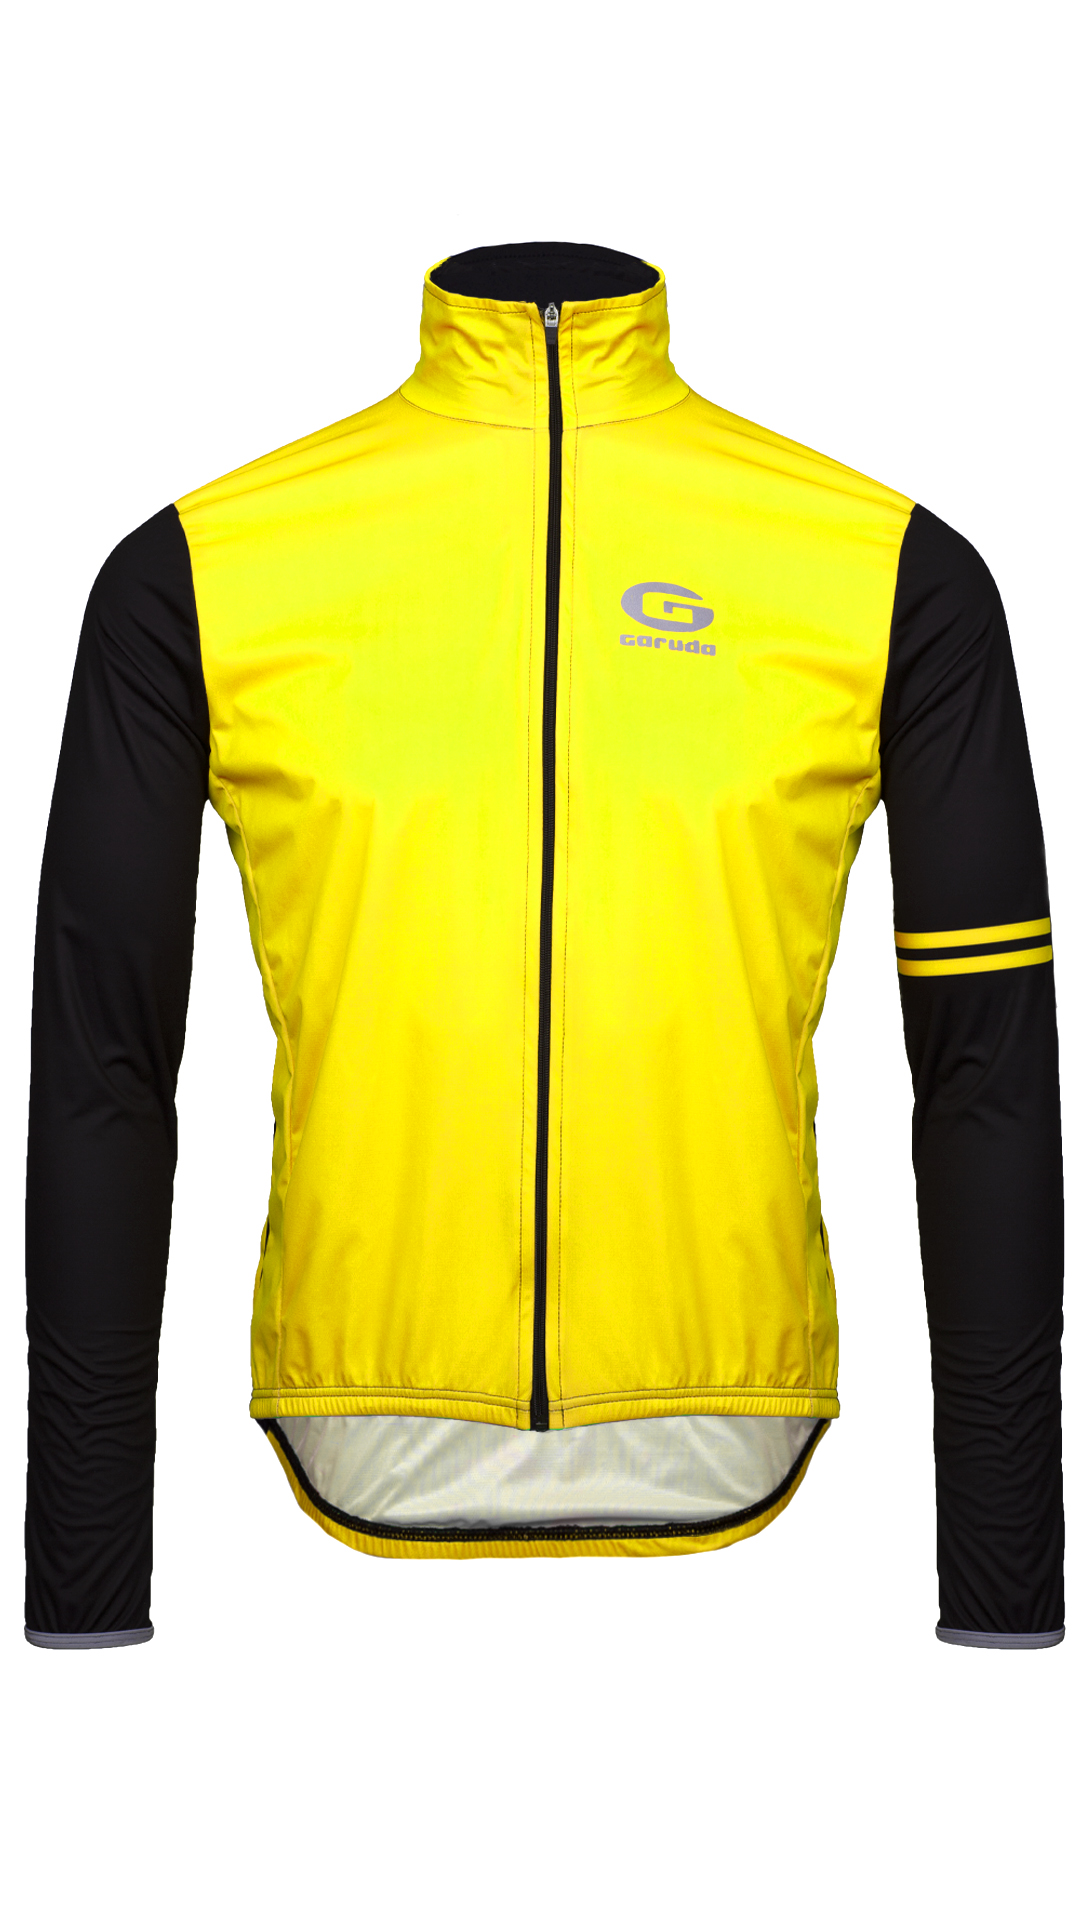 Veste de cyclisme coupe-vent jaune fluo